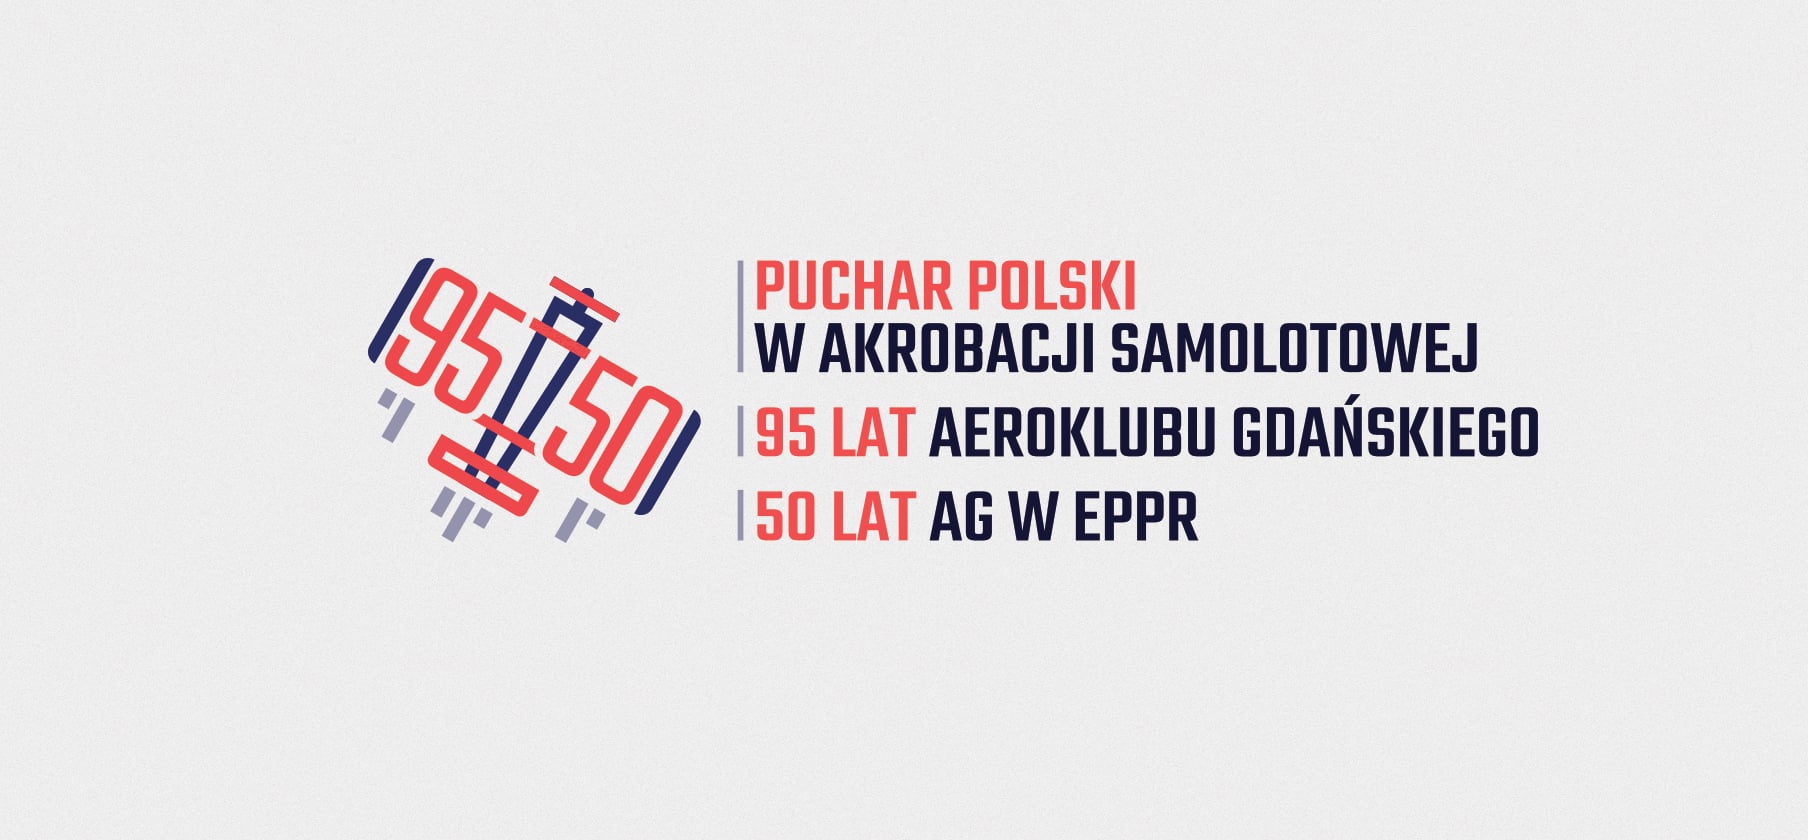 Puchar Polski w akrobacji samolotowej